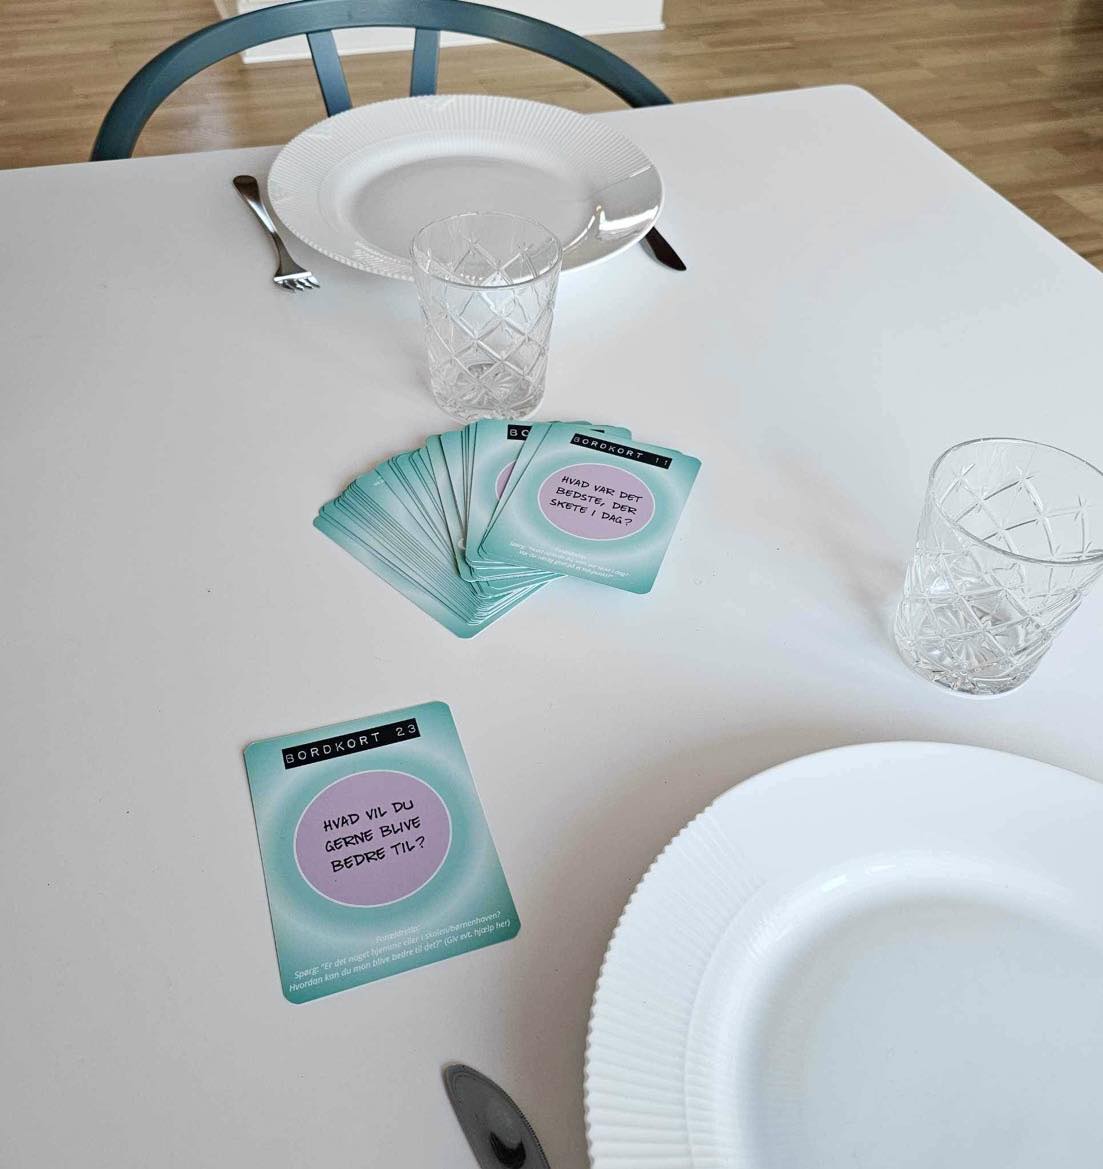 Billede af "Bordkort" - samtalekort, nærvær, sprog, refleksion